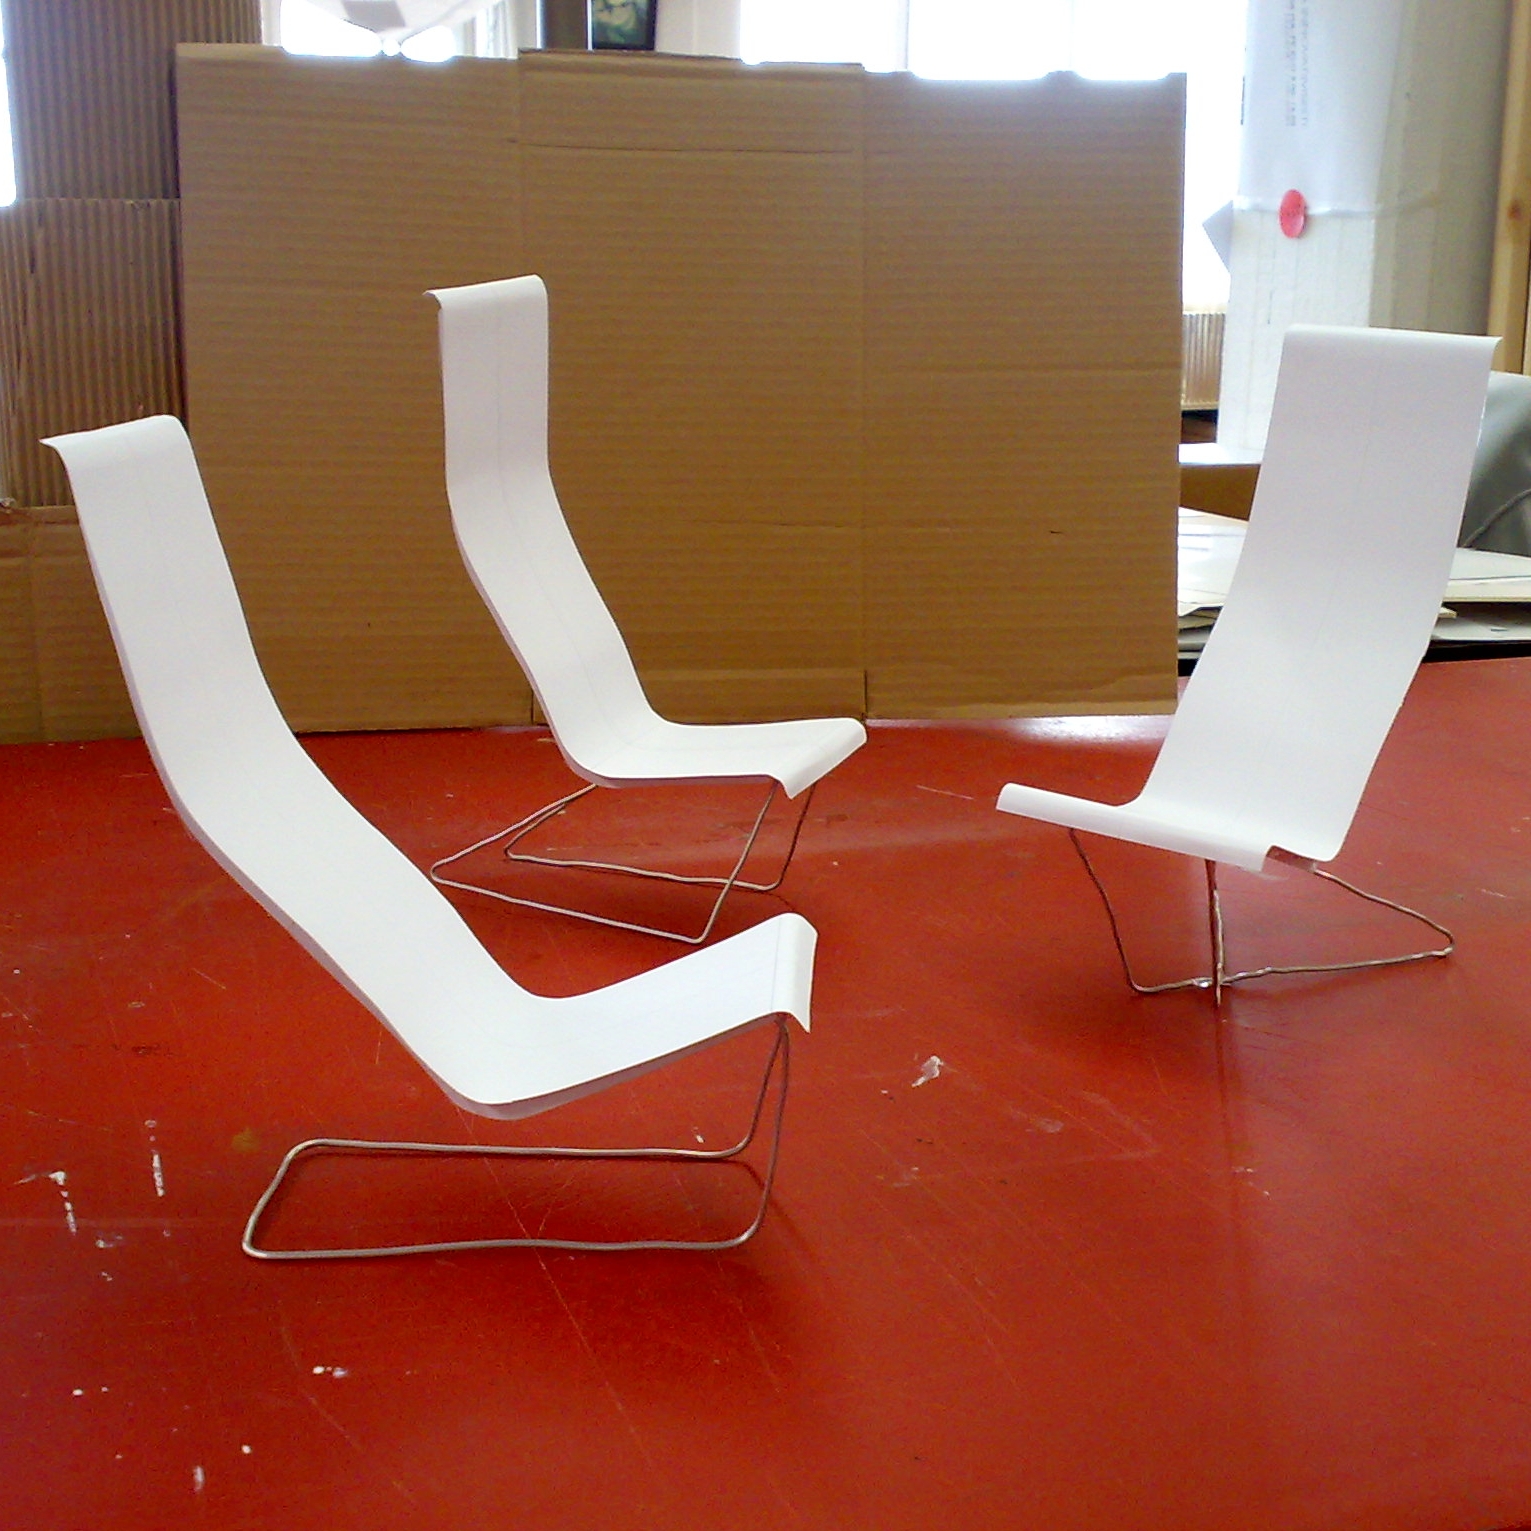 furniture scale model